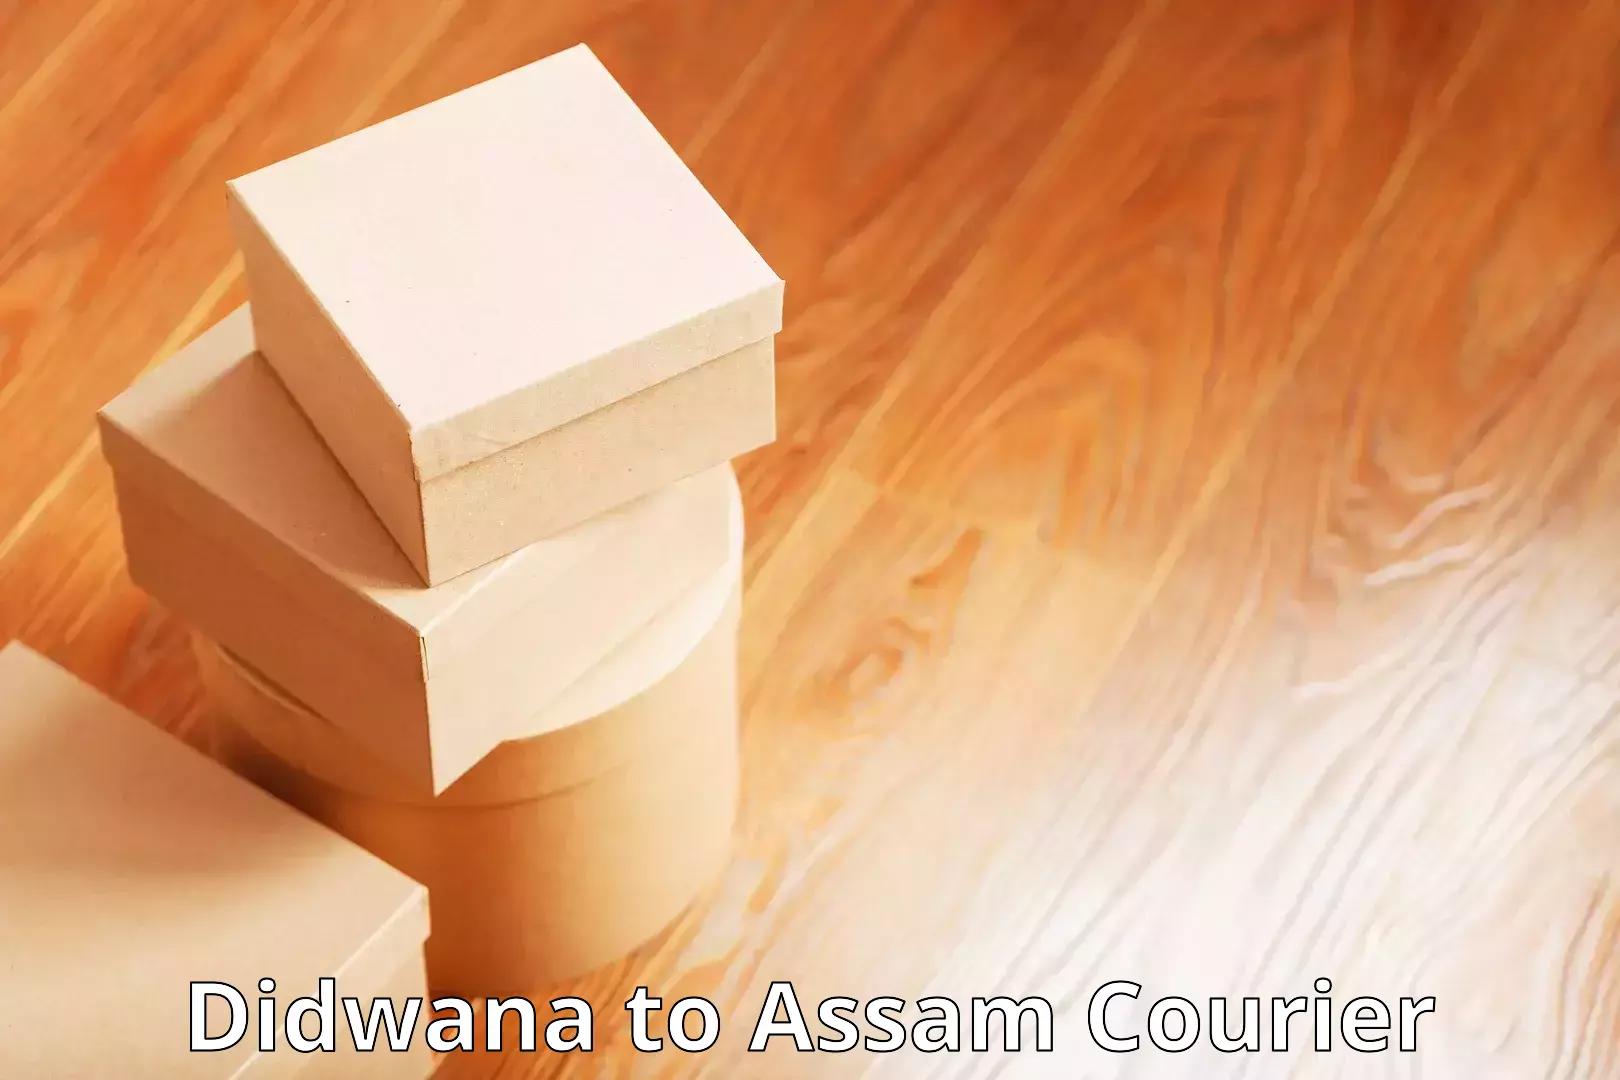 Global logistics network Didwana to Lala Assam